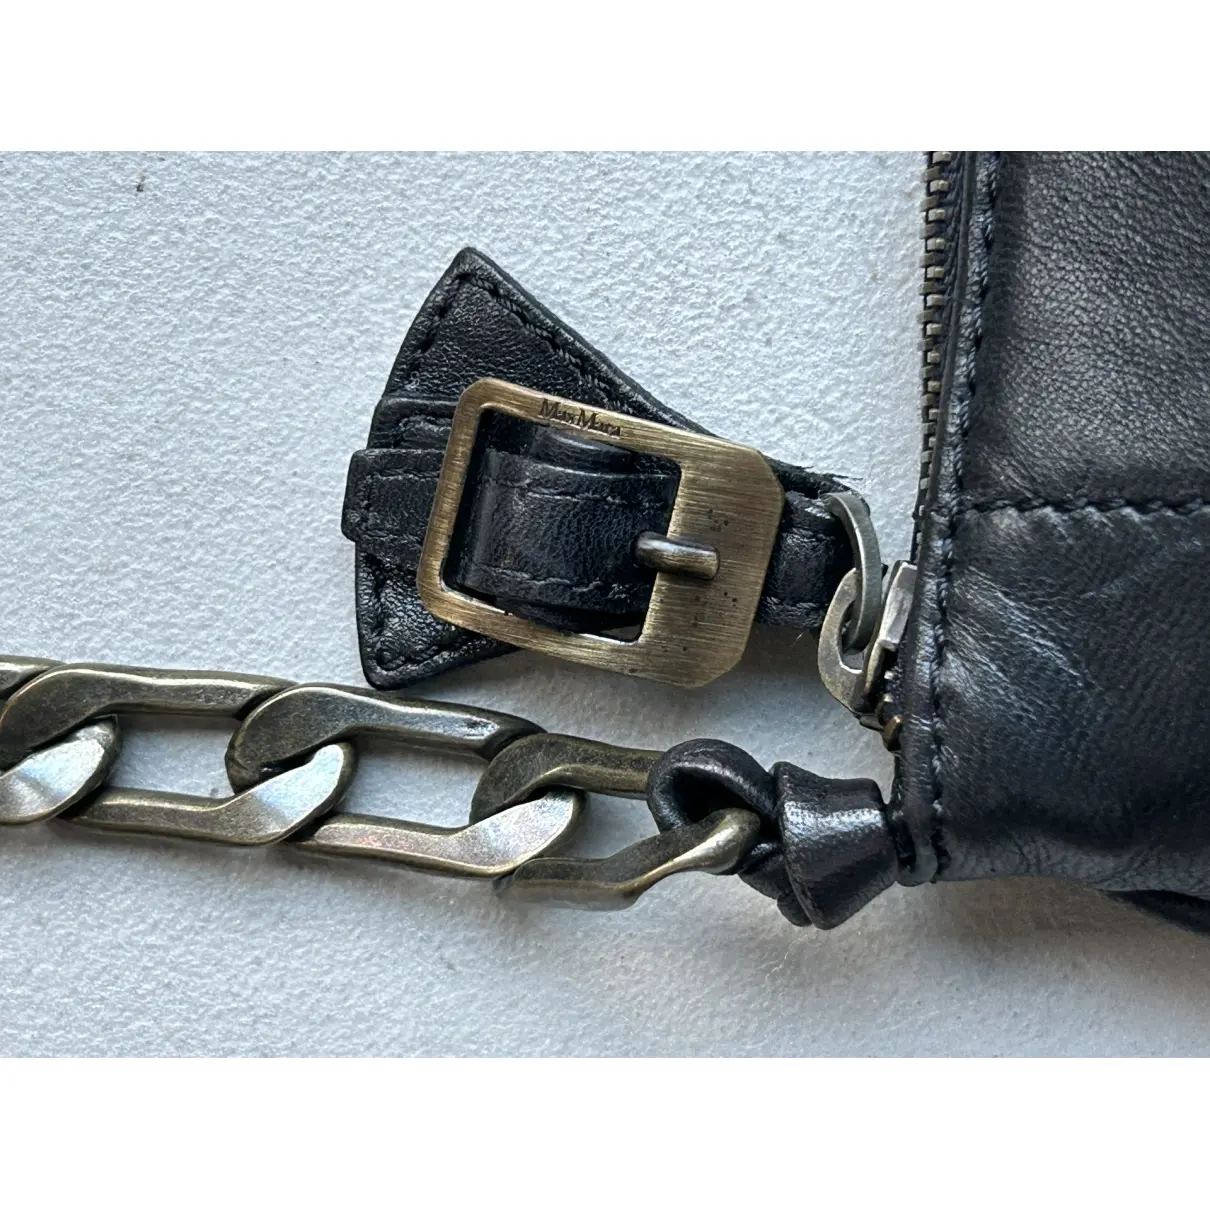 Leather mini bag Max Mara